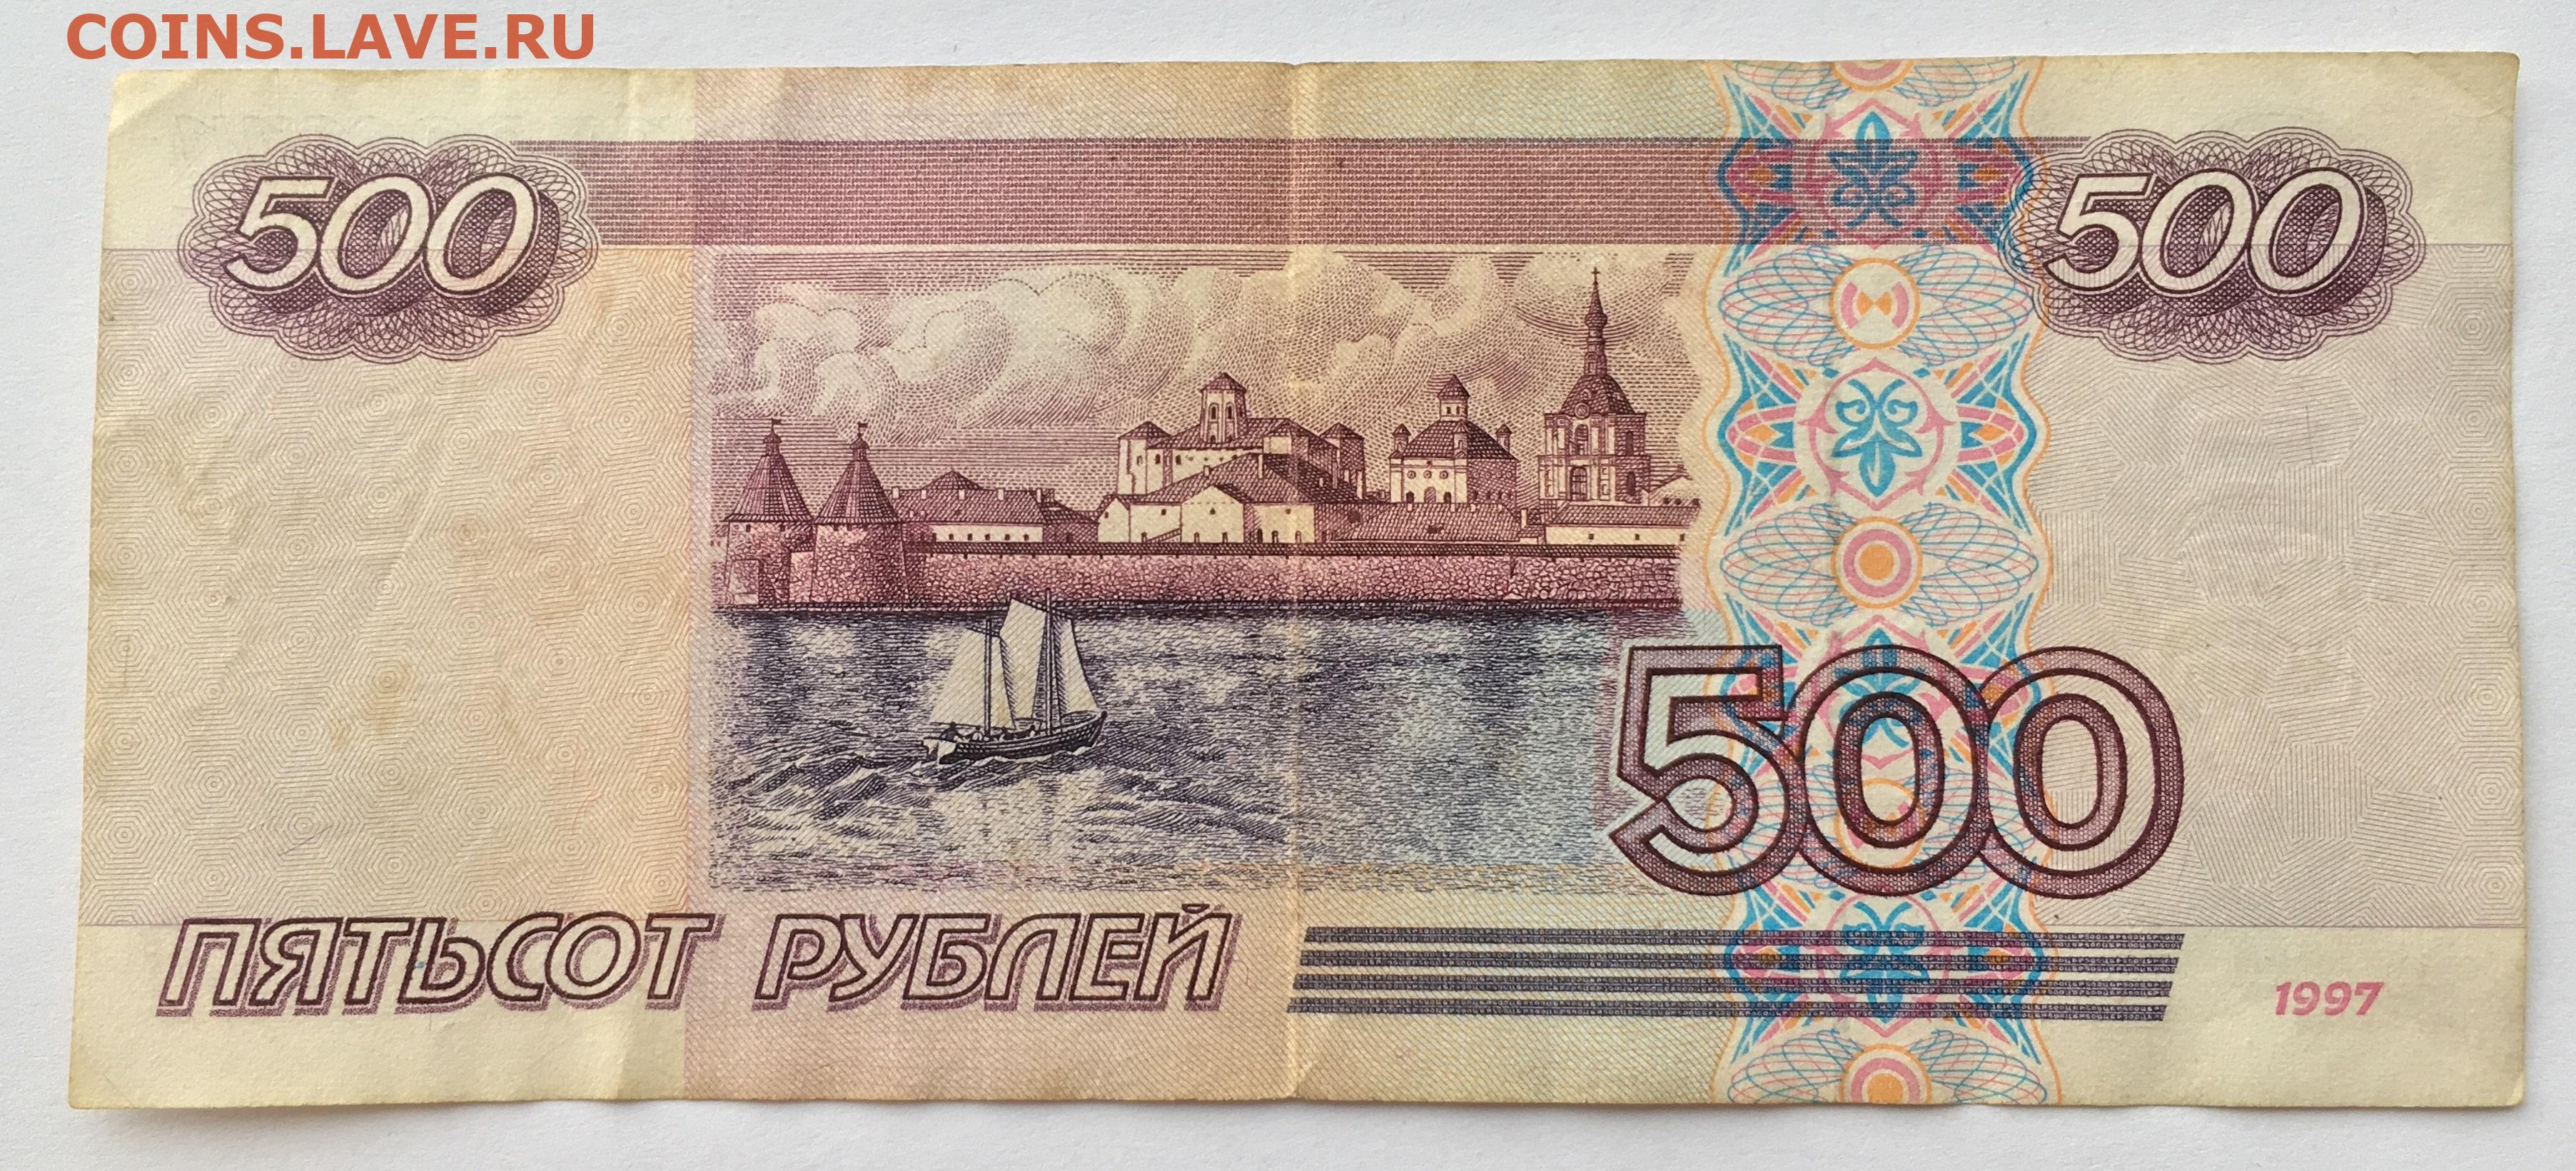 500 рублей действующие. 500 Рублей 1997 (модификация 2004 года). Купюры РФ 500рб. Купюры номиналом 500 рублей 1997 года.